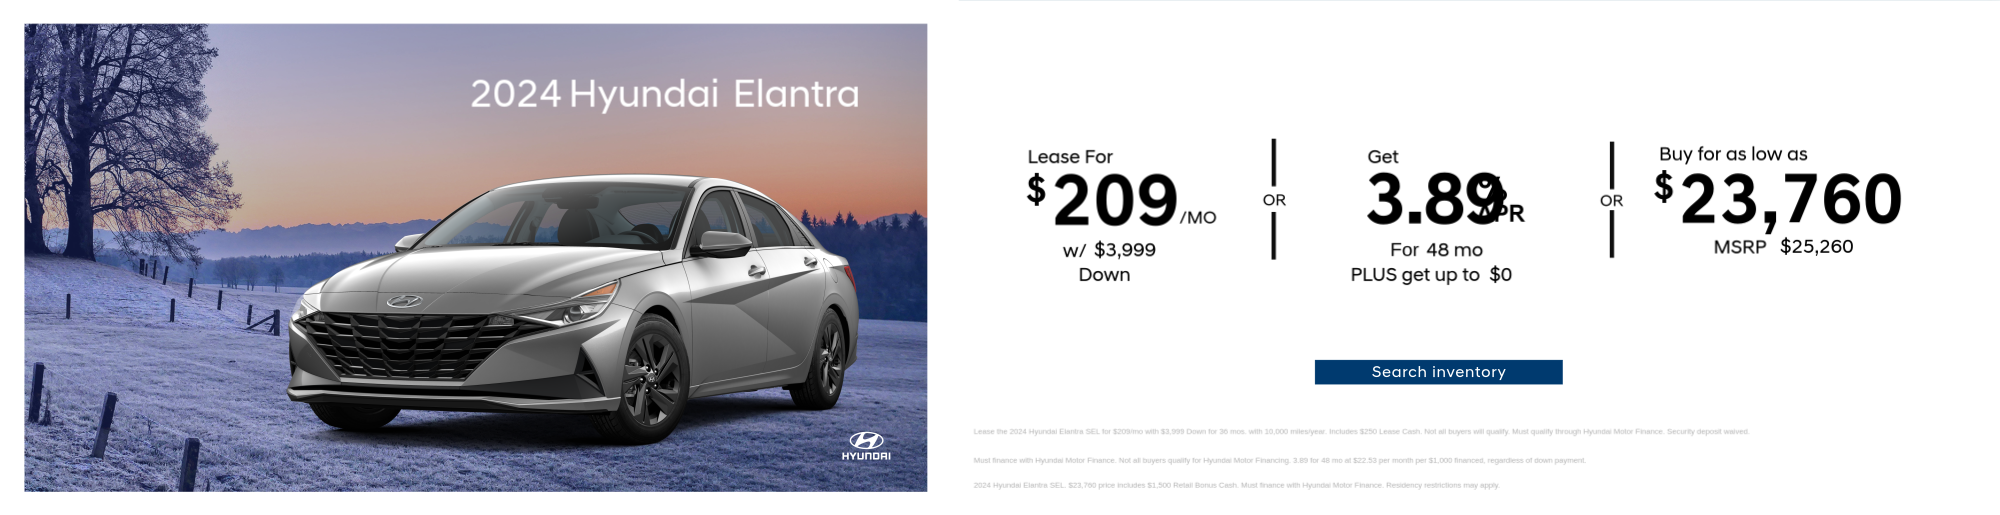 2023 Hyundai Elantra Special Offer